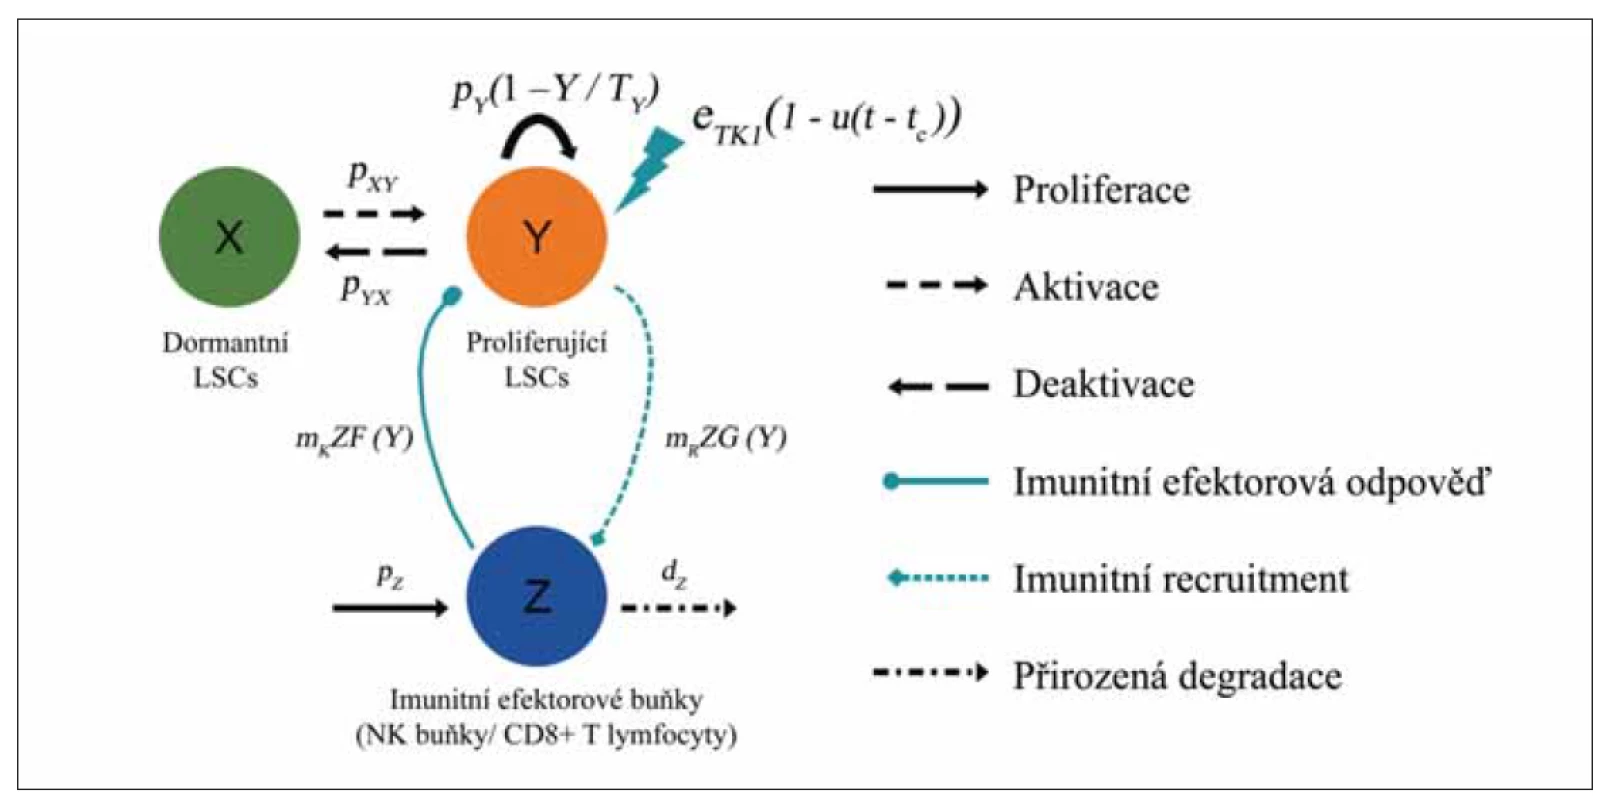 Schéma modelu ODE s imunitní odpovědí. Zobrazeny jsou 3 typy buněk: dormantní (X, zelená) a proliferující
(Y, červená, s obratem pY (1 – Y / TY) LSC a imunitní efektorové buňky (Z, modrá, generované rychlostí pz a degradující
rychlostí dz). Model přepokládá: (1) Mechanizmus aktivace a deaktivace dormantních a proliferujících LSC s rychlostí
pxy a pyx. (2) Cytotoxický efekt TKI na proliferující LSC s intenzitou eTKI působící od času t = 0 do ukončení v čase t = tc.
(3) Imunitní odpověď vůči proliferujícím LSC s intenzitou mKZF (Y). (4) Imunitní recruitment při kontaktu imunitních
efektorových buněk s leukemickými LSC s intenzitou mRZG (Y). Upraveno dle [12].